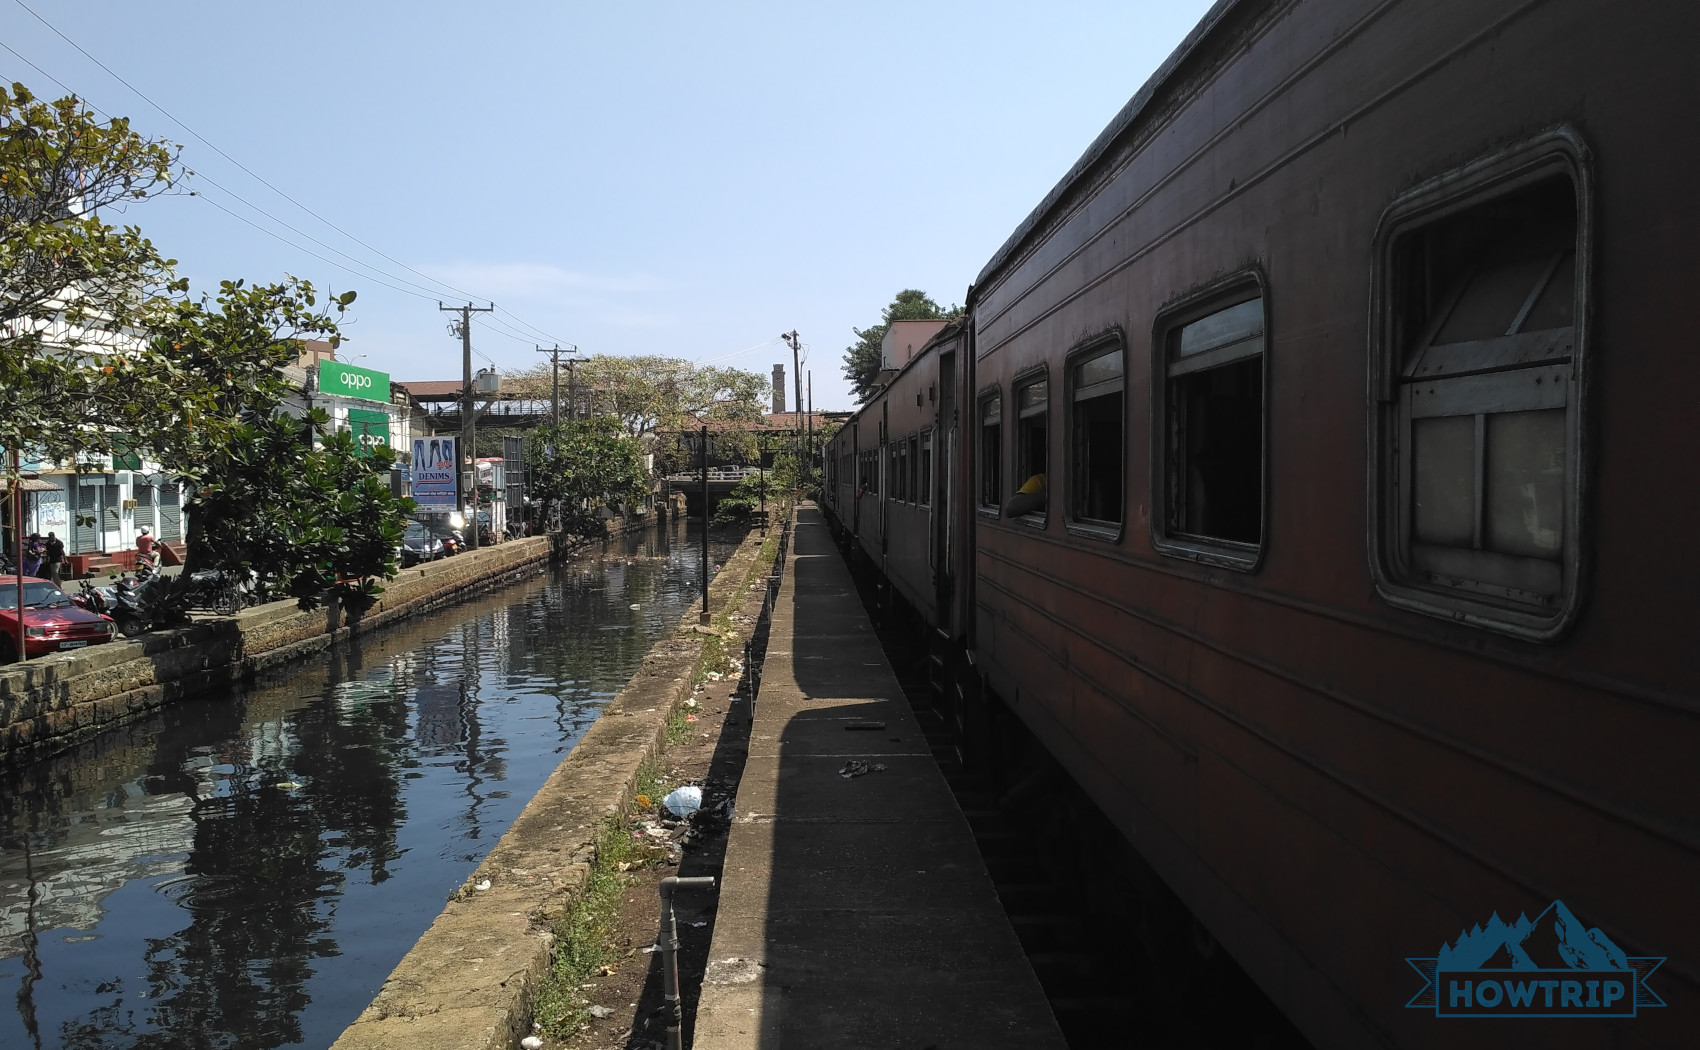 Поезд Шри-Ланка